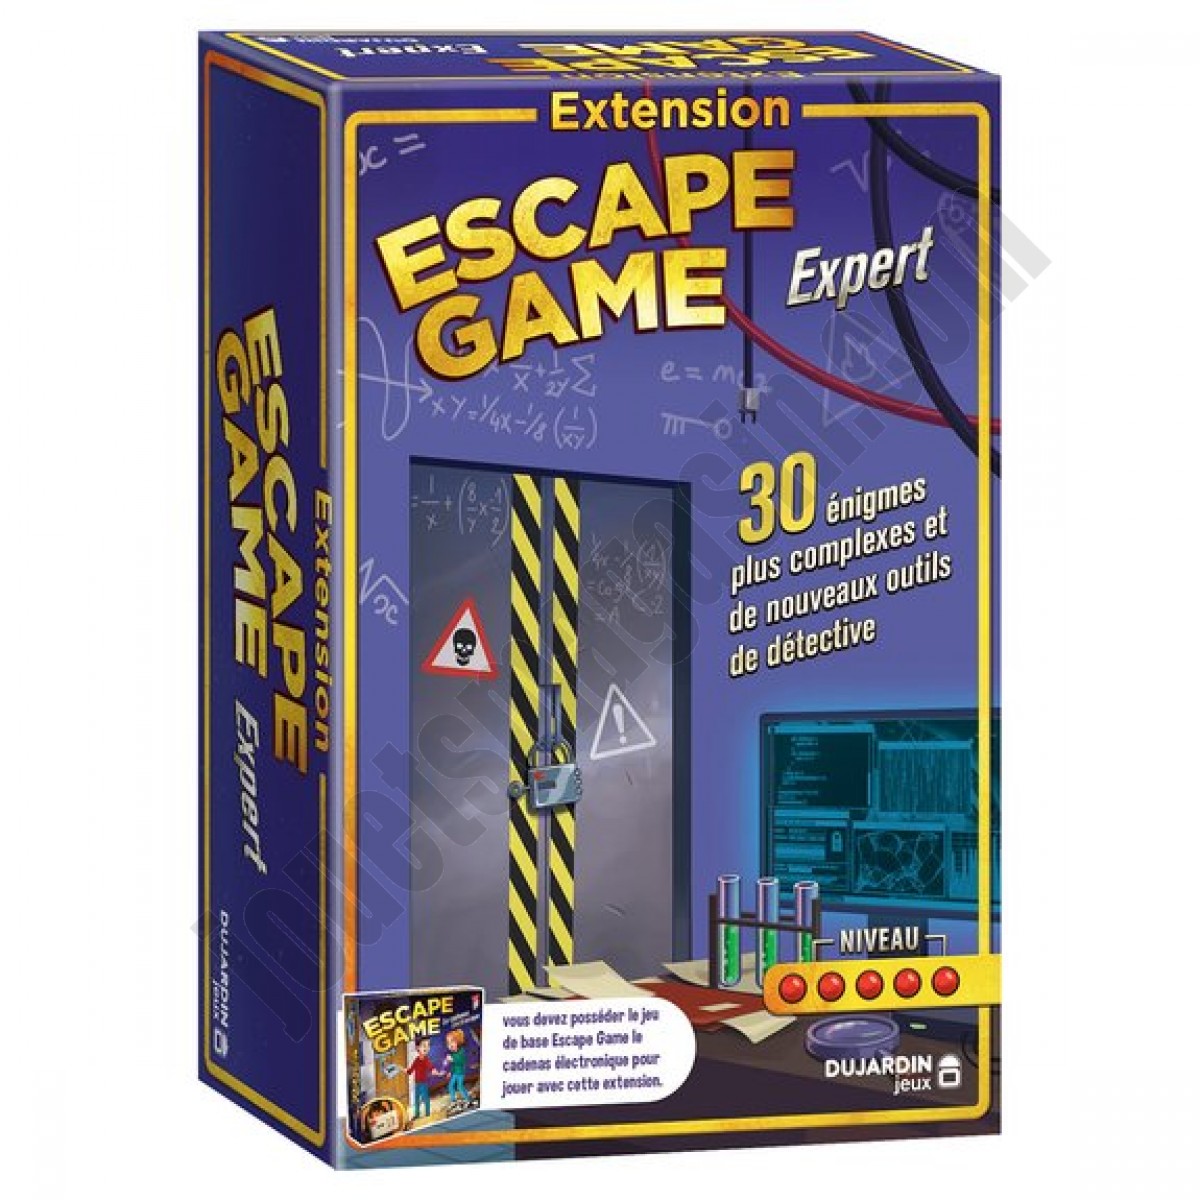 Escape Game Extension Experts ◆◆◆ Nouveau - Escape Game Extension Experts ◆◆◆ Nouveau